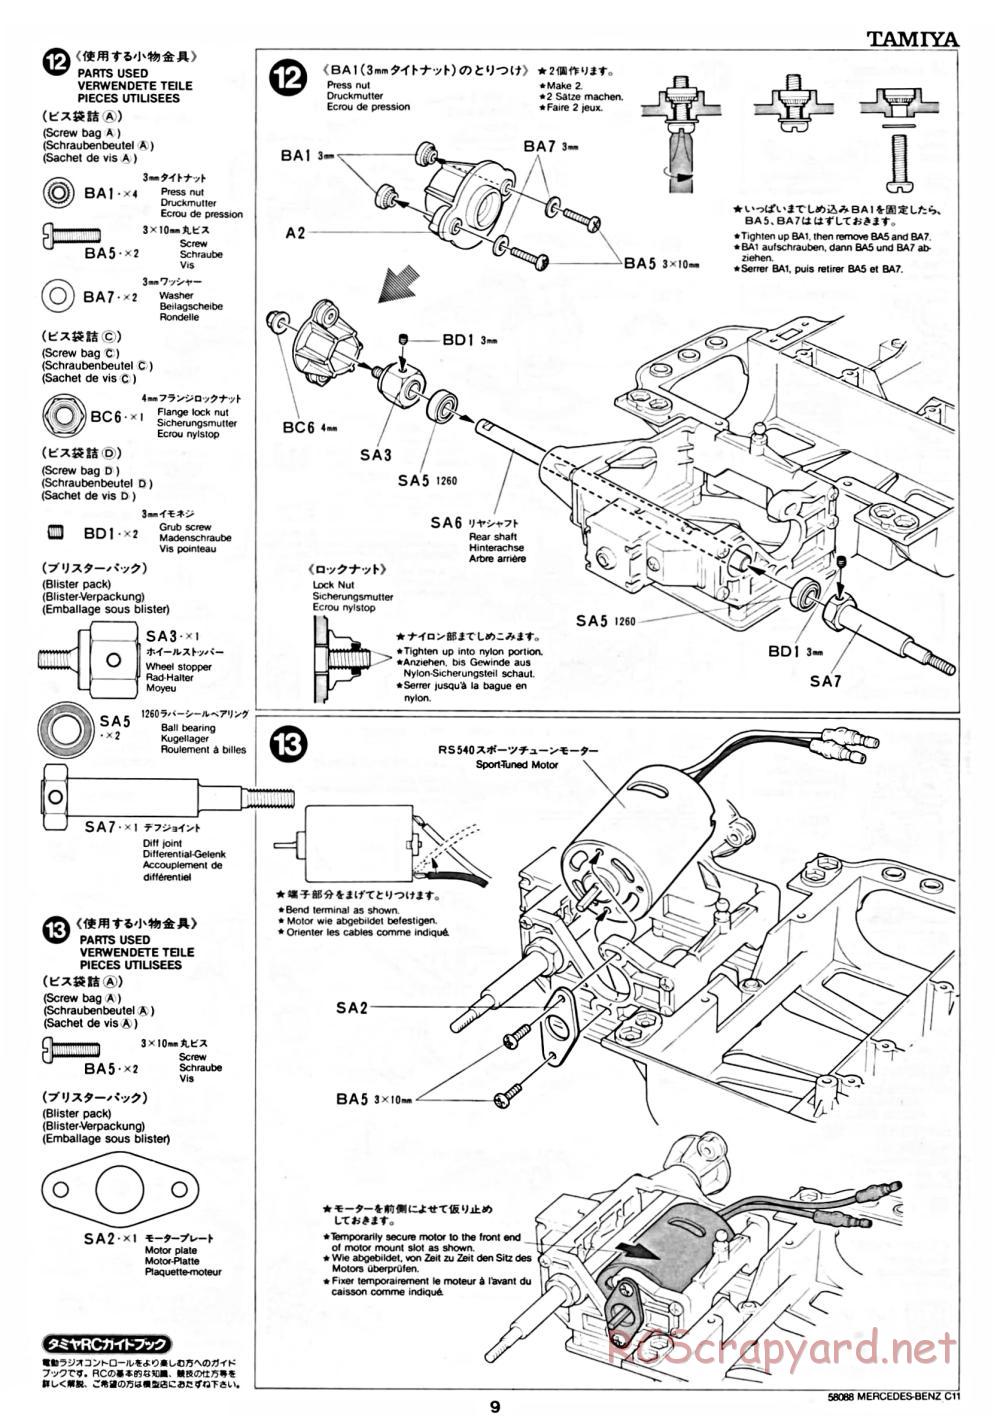 Tamiya - Mercedes Benz C11 - 58088 - Manual - Page 9